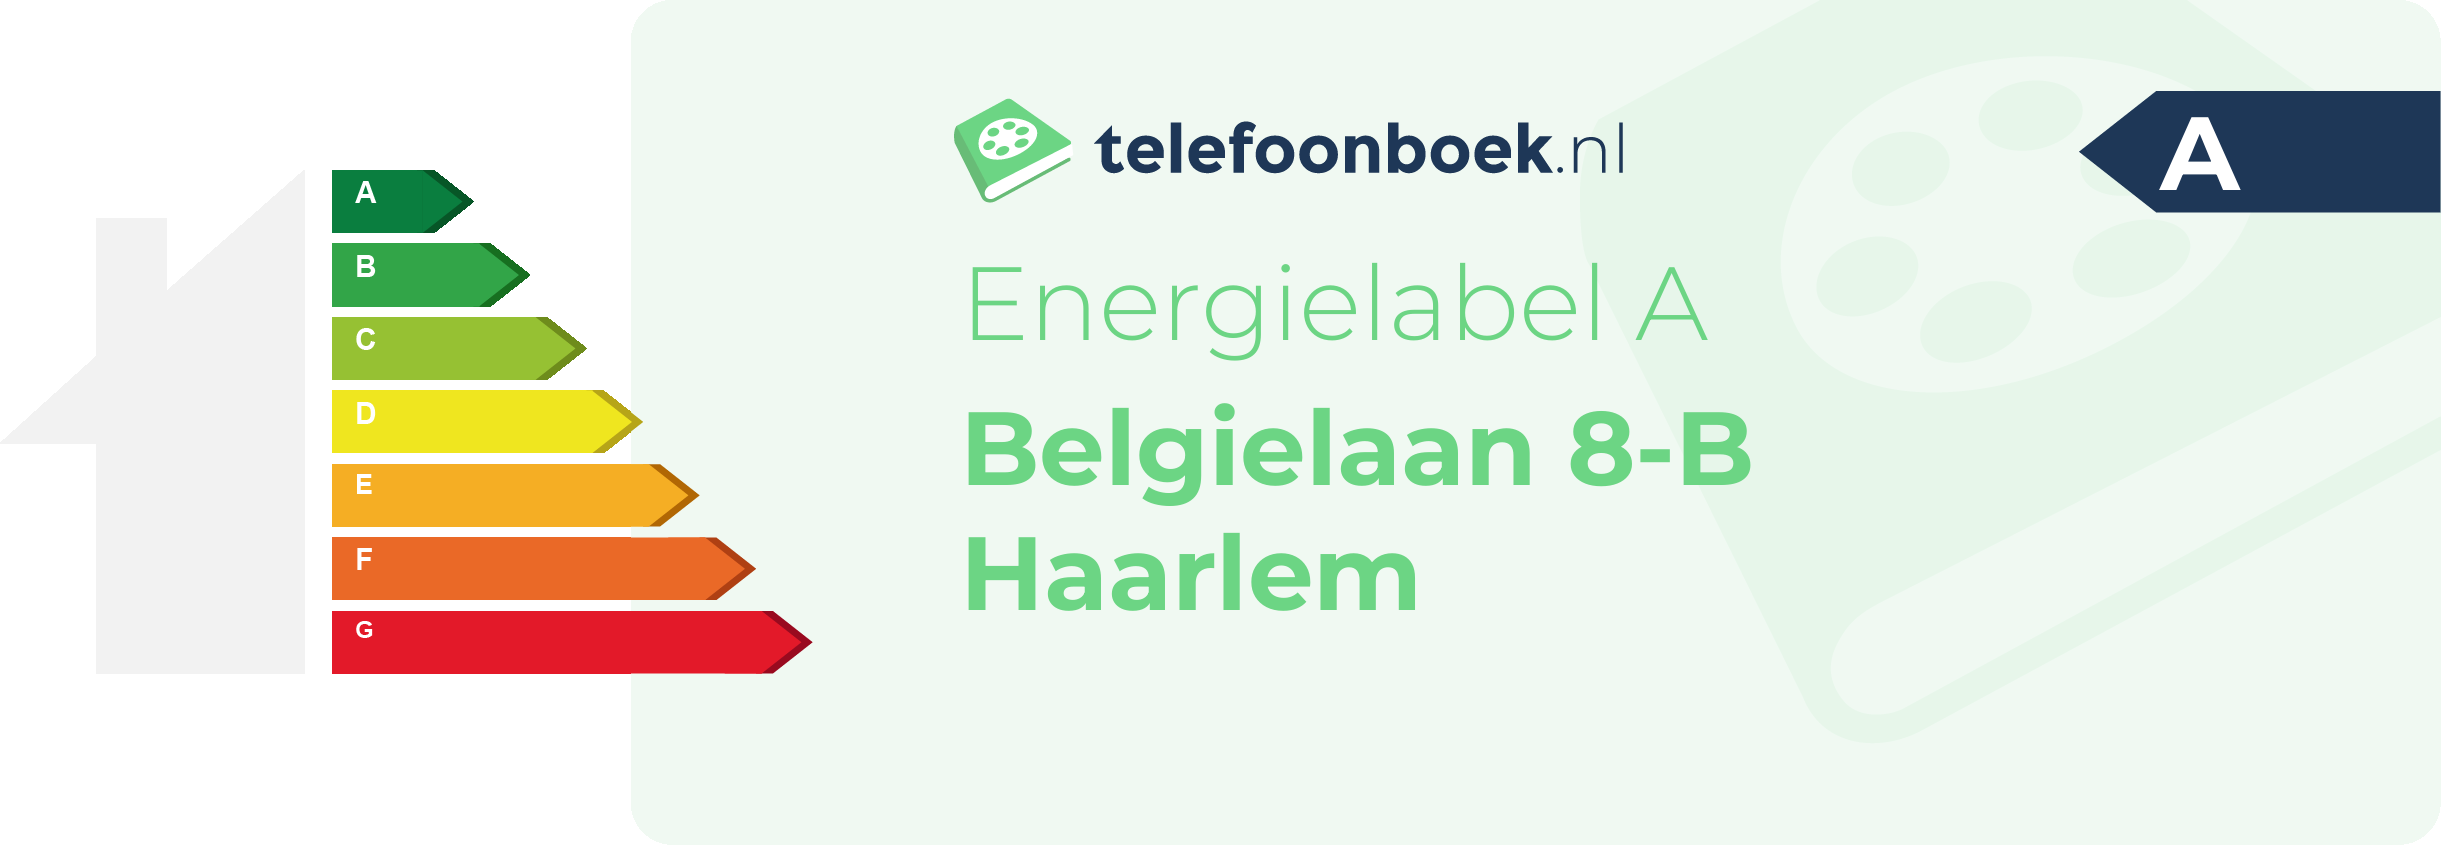 Energielabel Belgielaan 8-B Haarlem